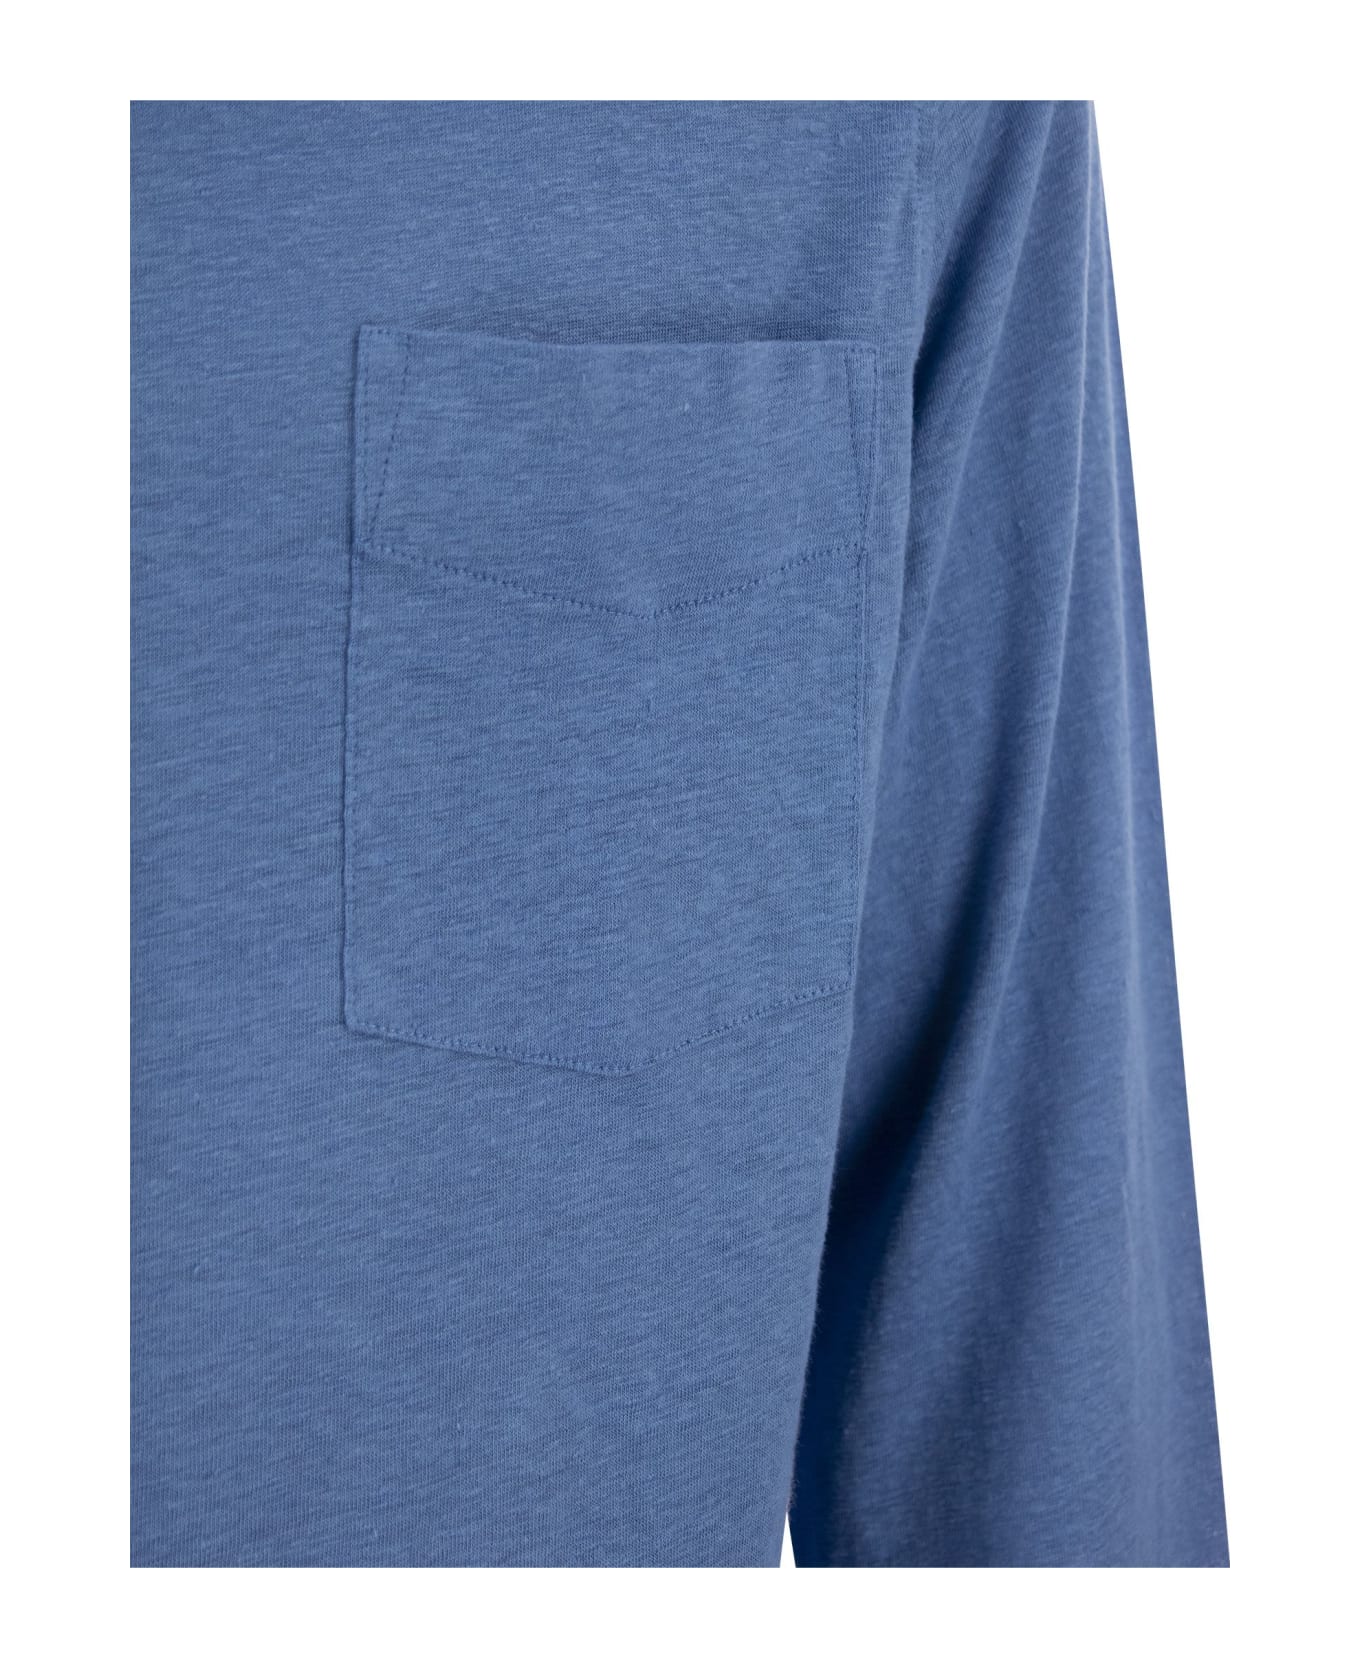 Majestic Filatures Linen Long-sleeved Shirt - Light Blue